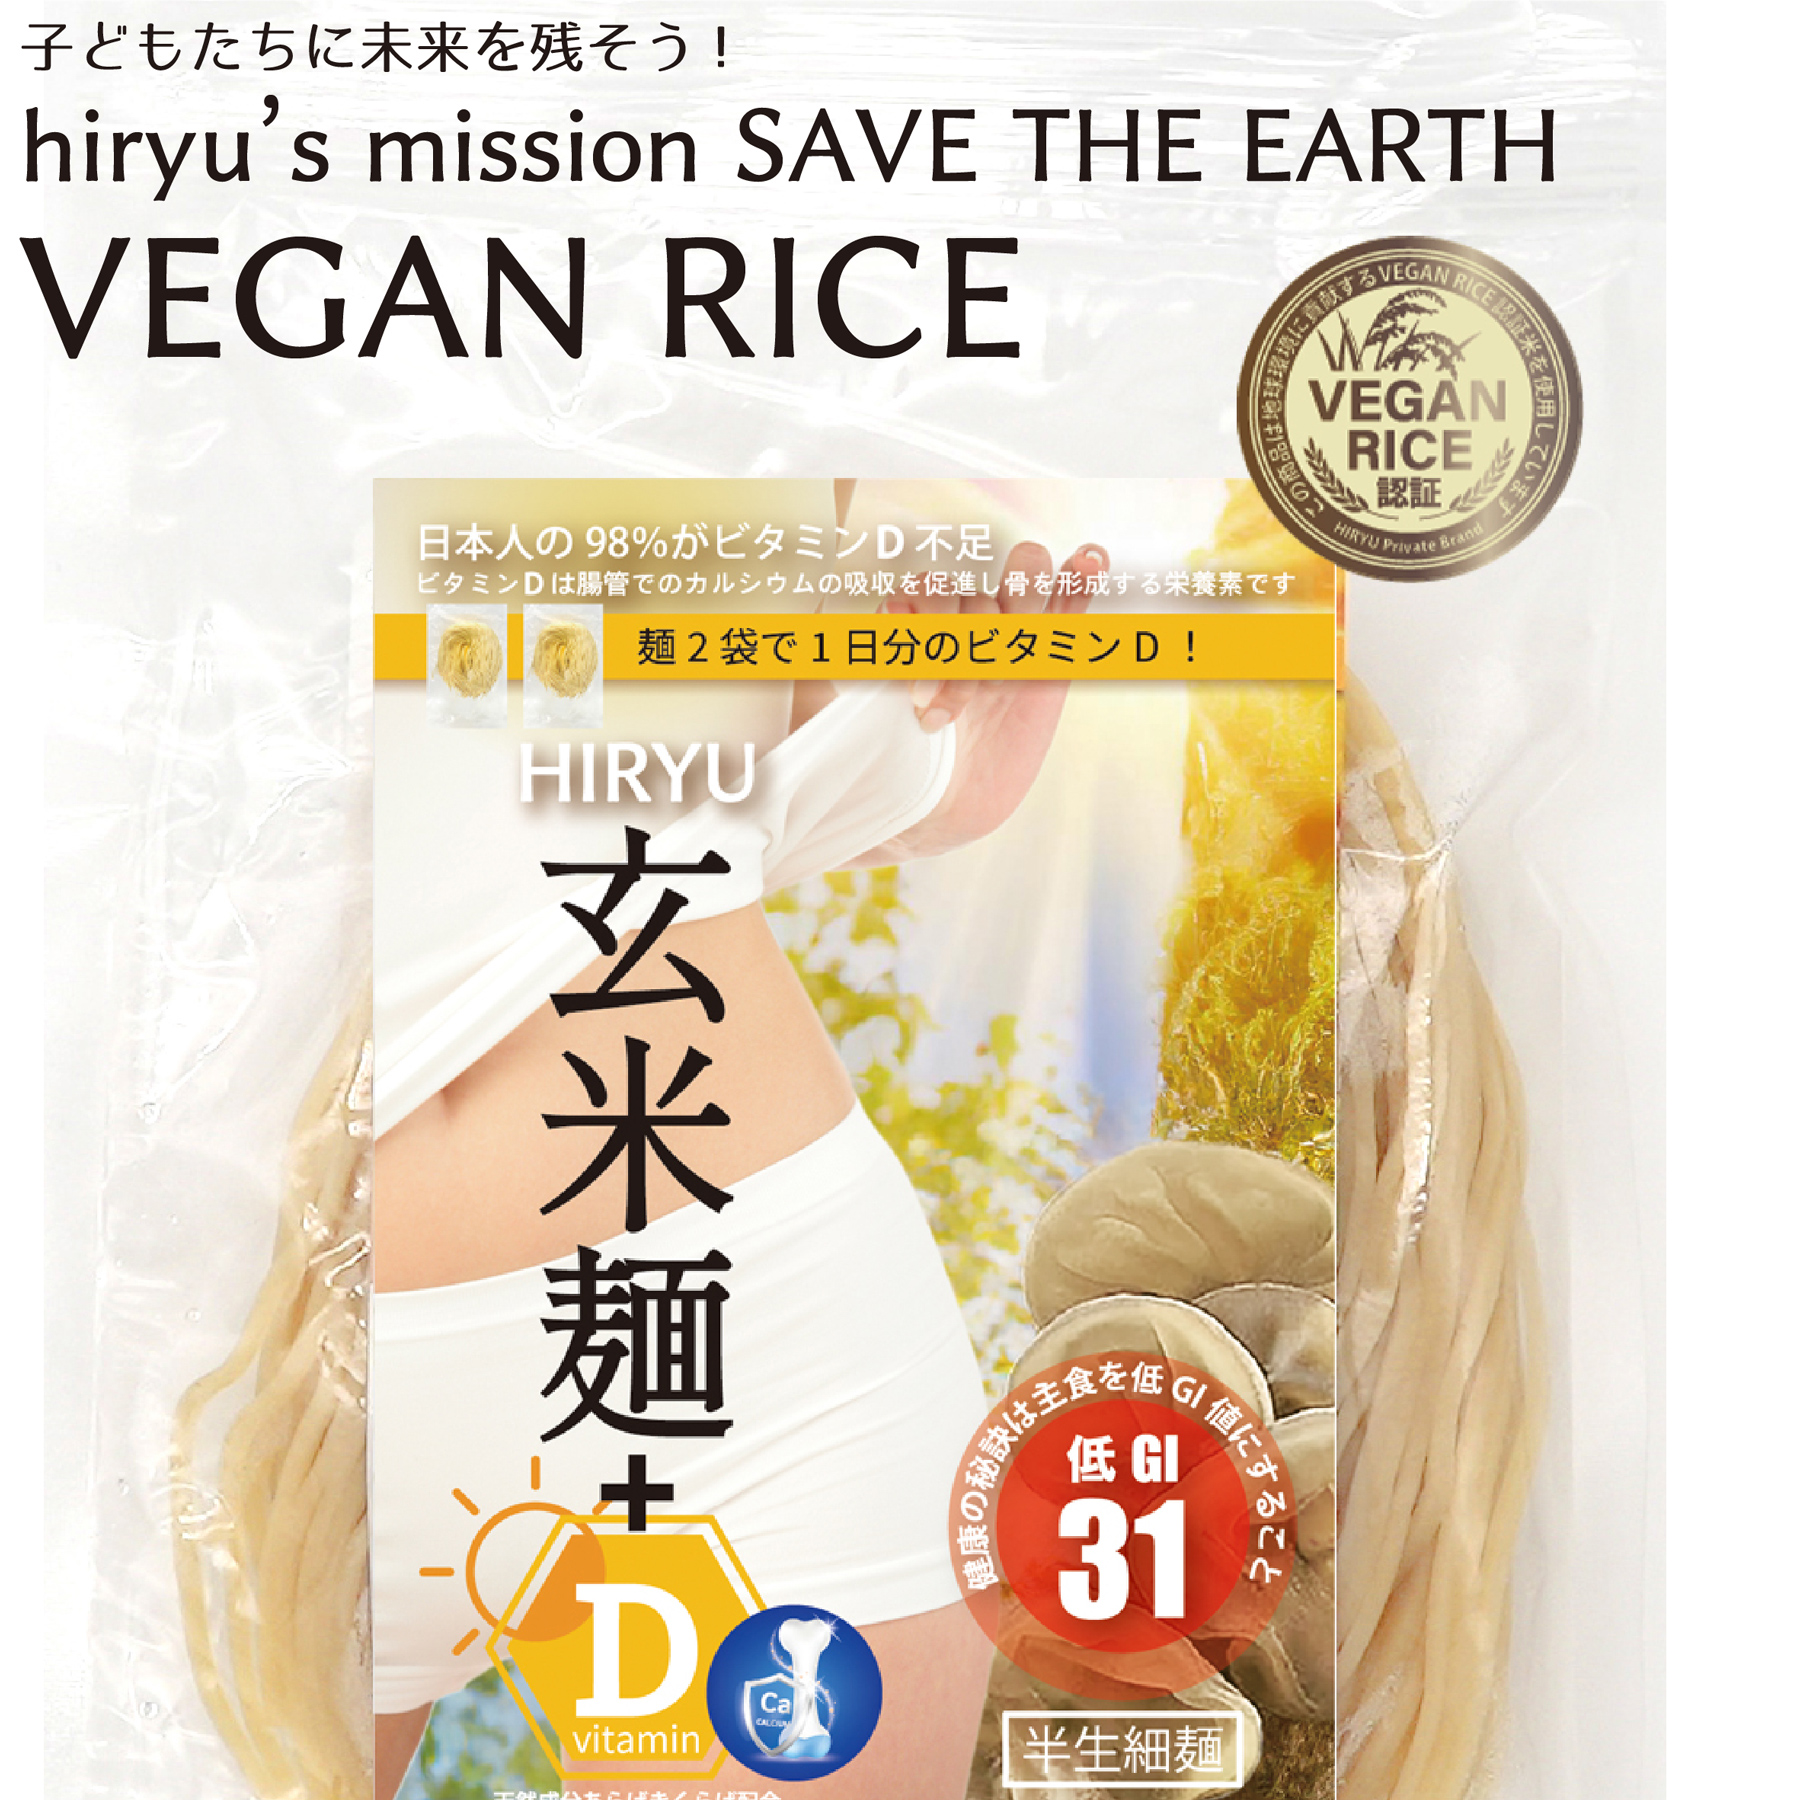 玄米麺+D  細麺 半生 農薬・肥料不使用 GI値31  VEGAN RICE